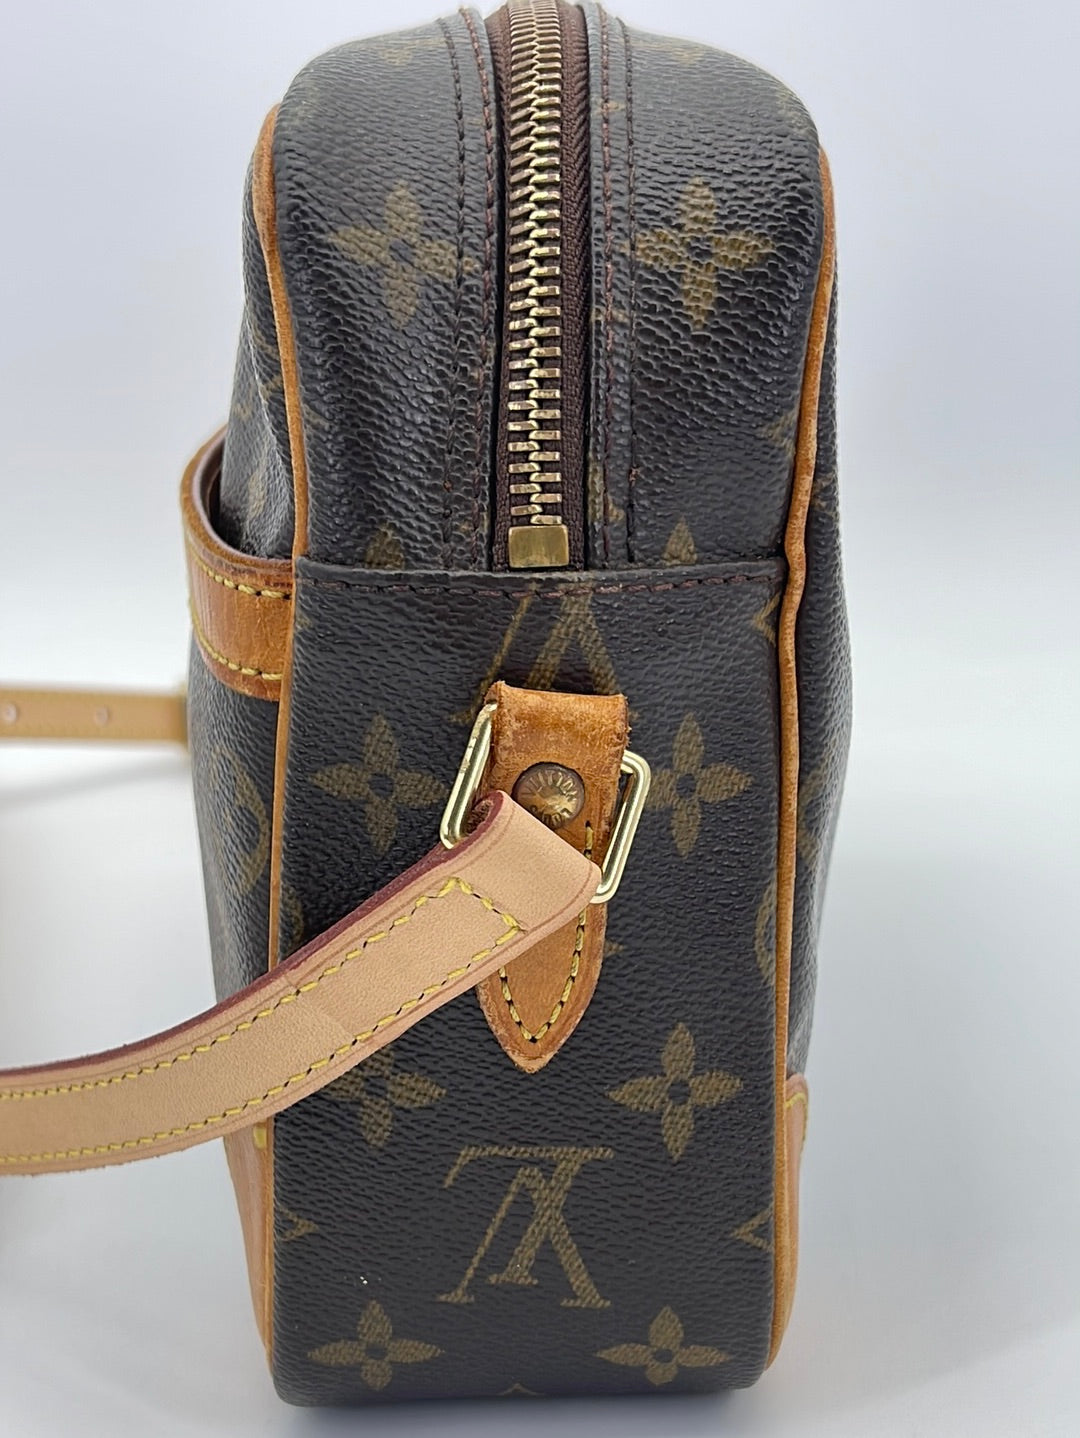 Authentic Louis Vuitton Monogram Trocadero 27 Shoulder Bag #14622